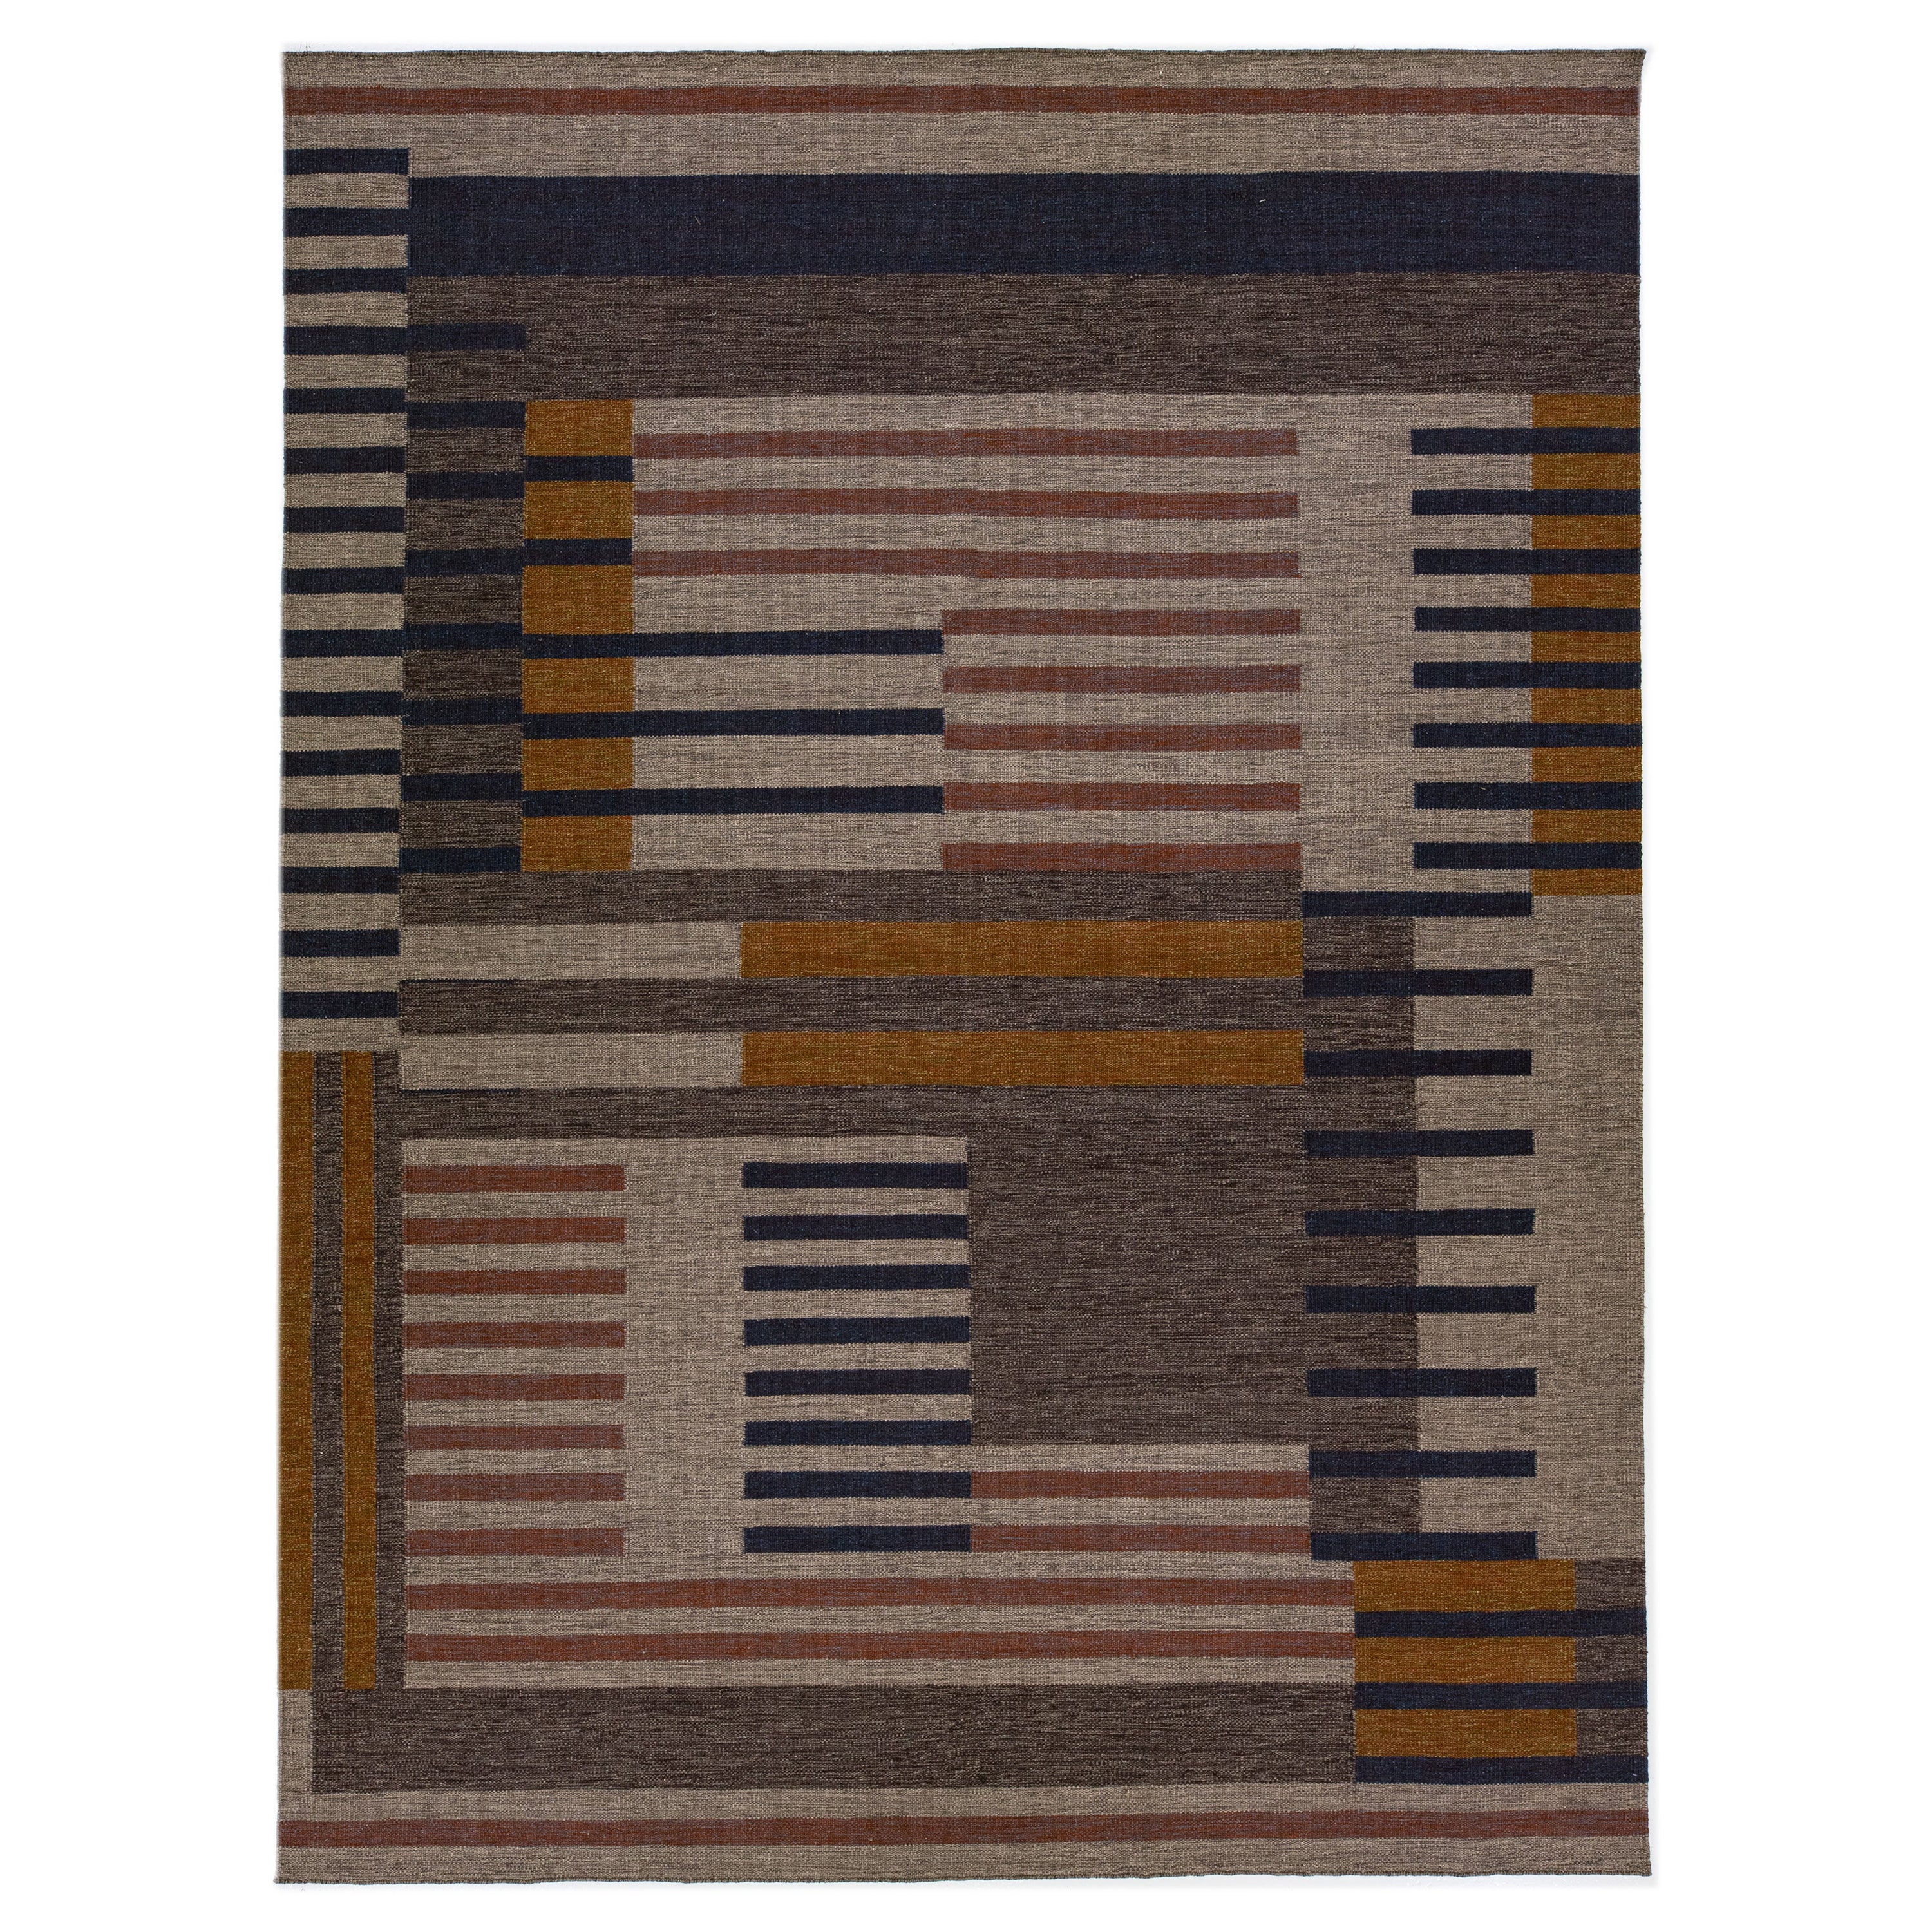 Modern Kilim Flatweave Wool Rug with Art Deco Design in Earthy Tones